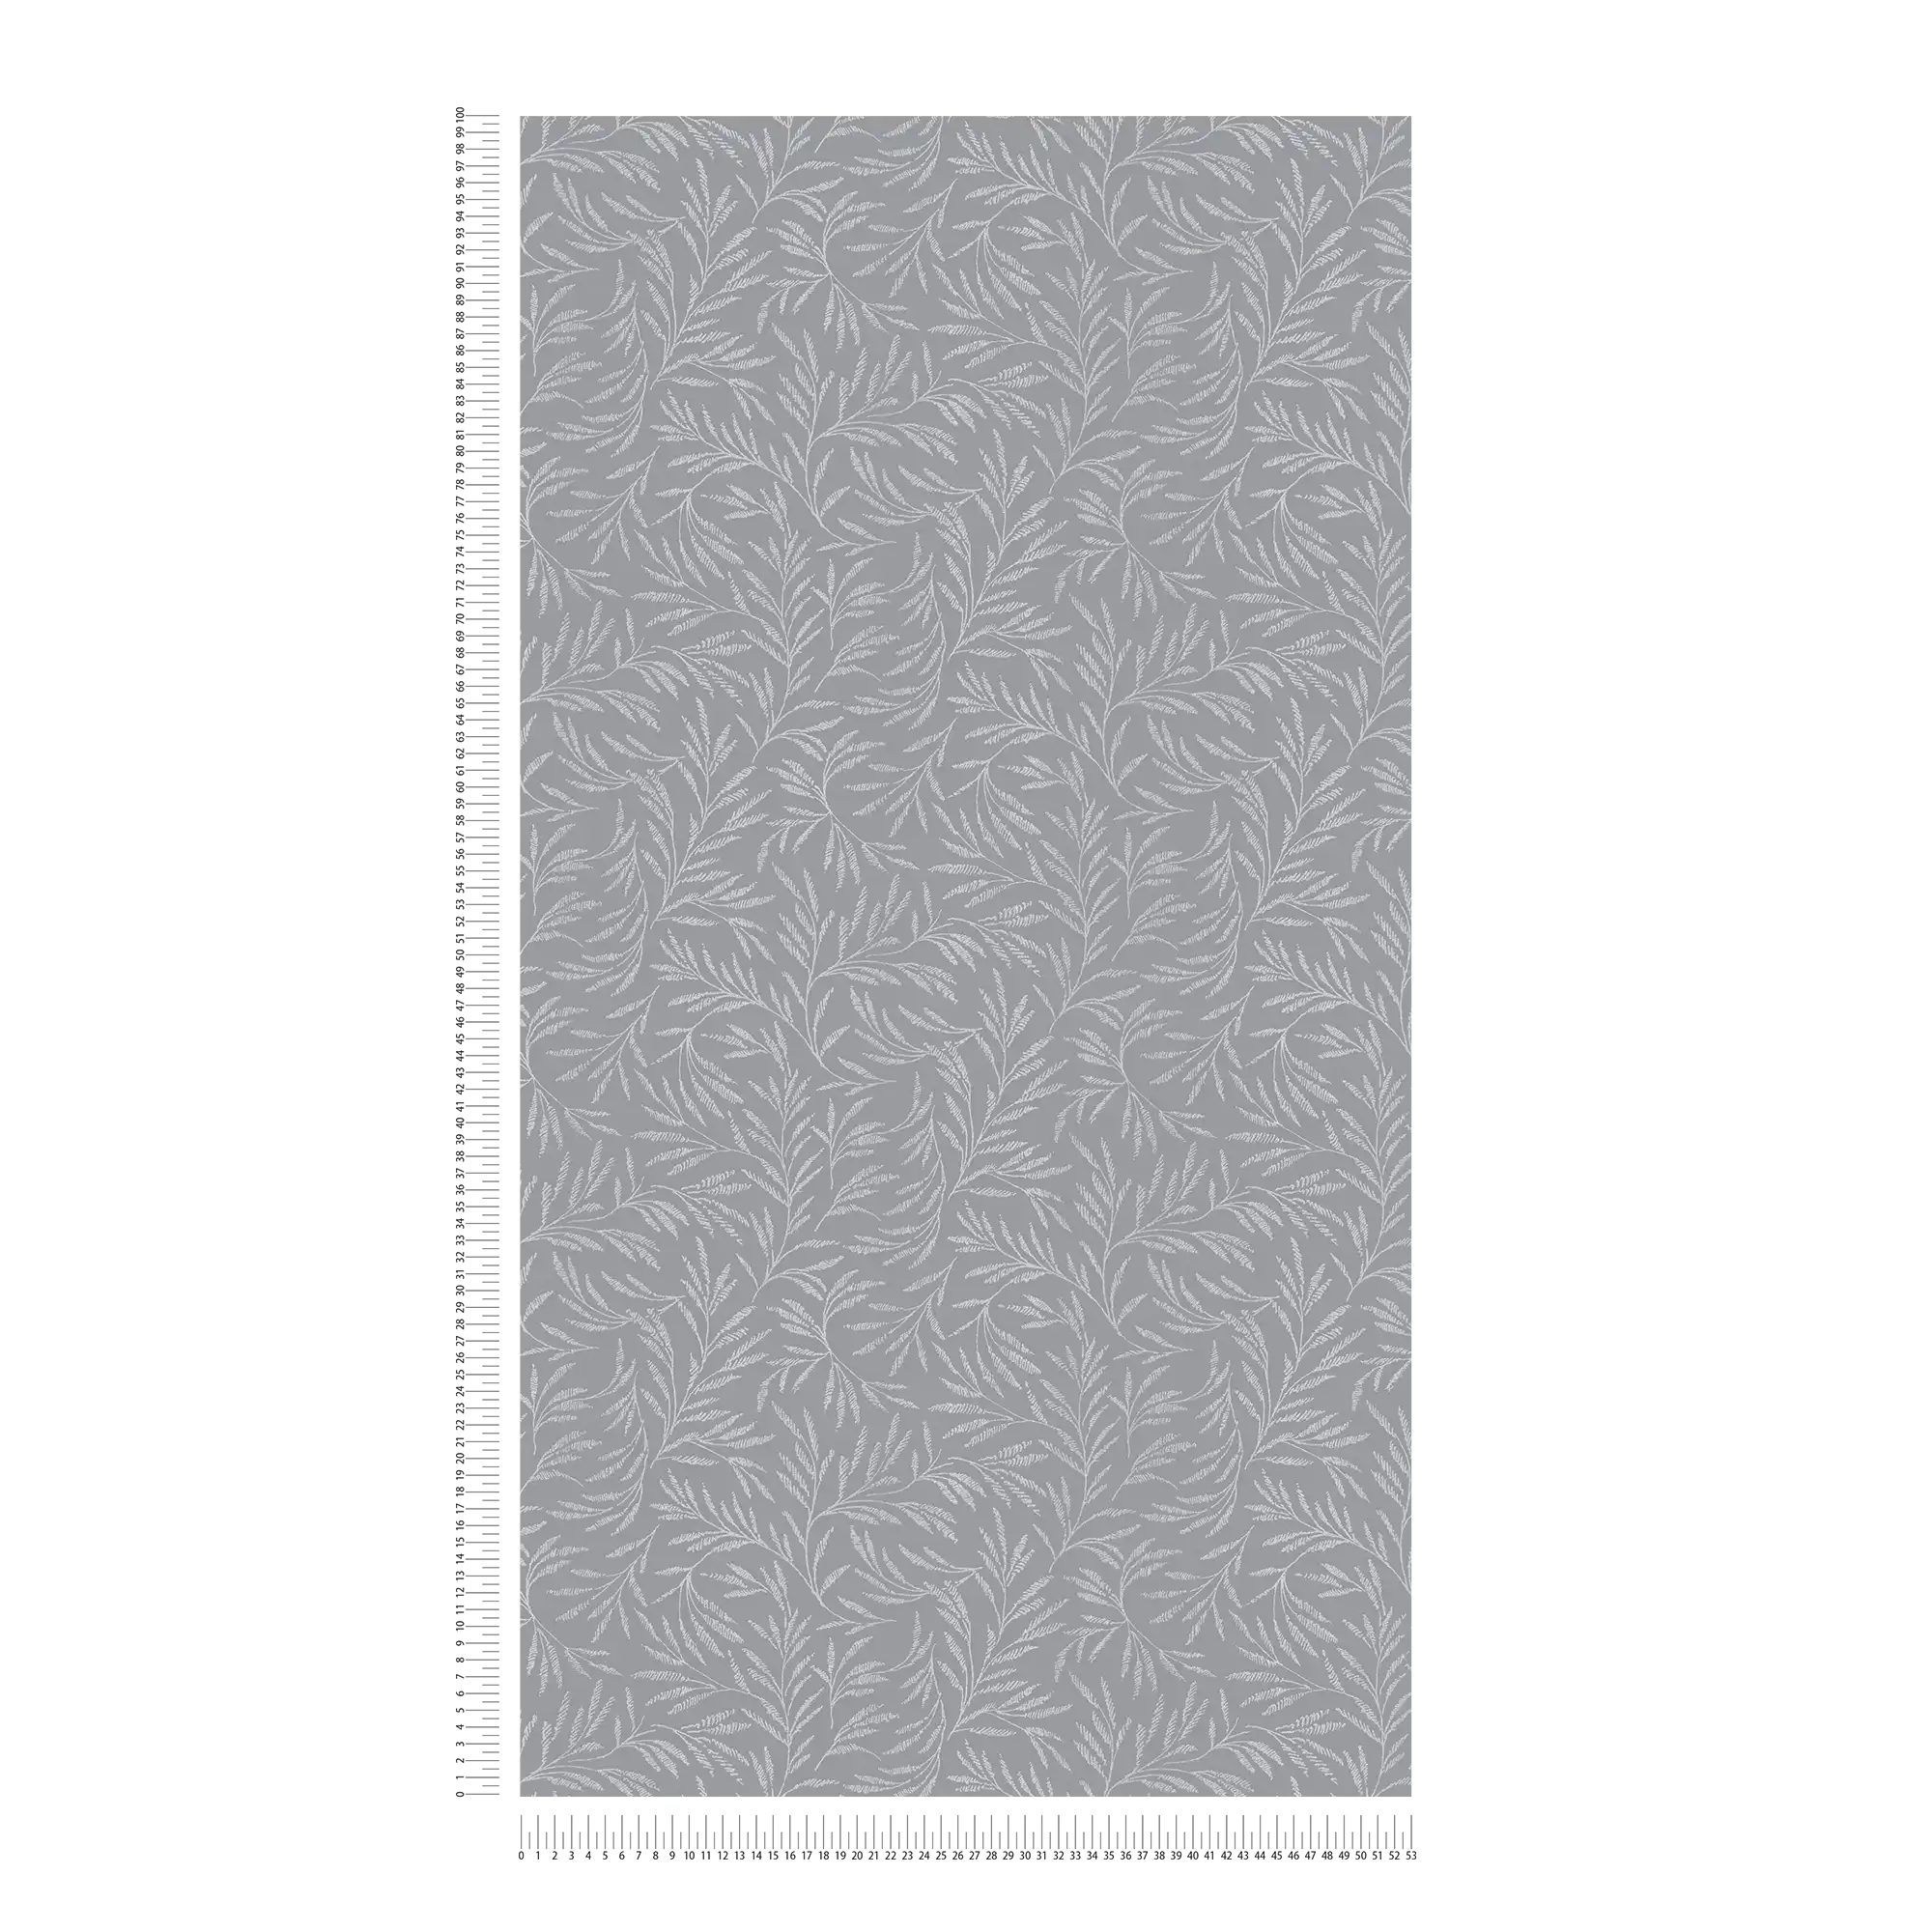             Carta da parati in tessuto non tessuto grigio con motivo a foglie d'argento
        